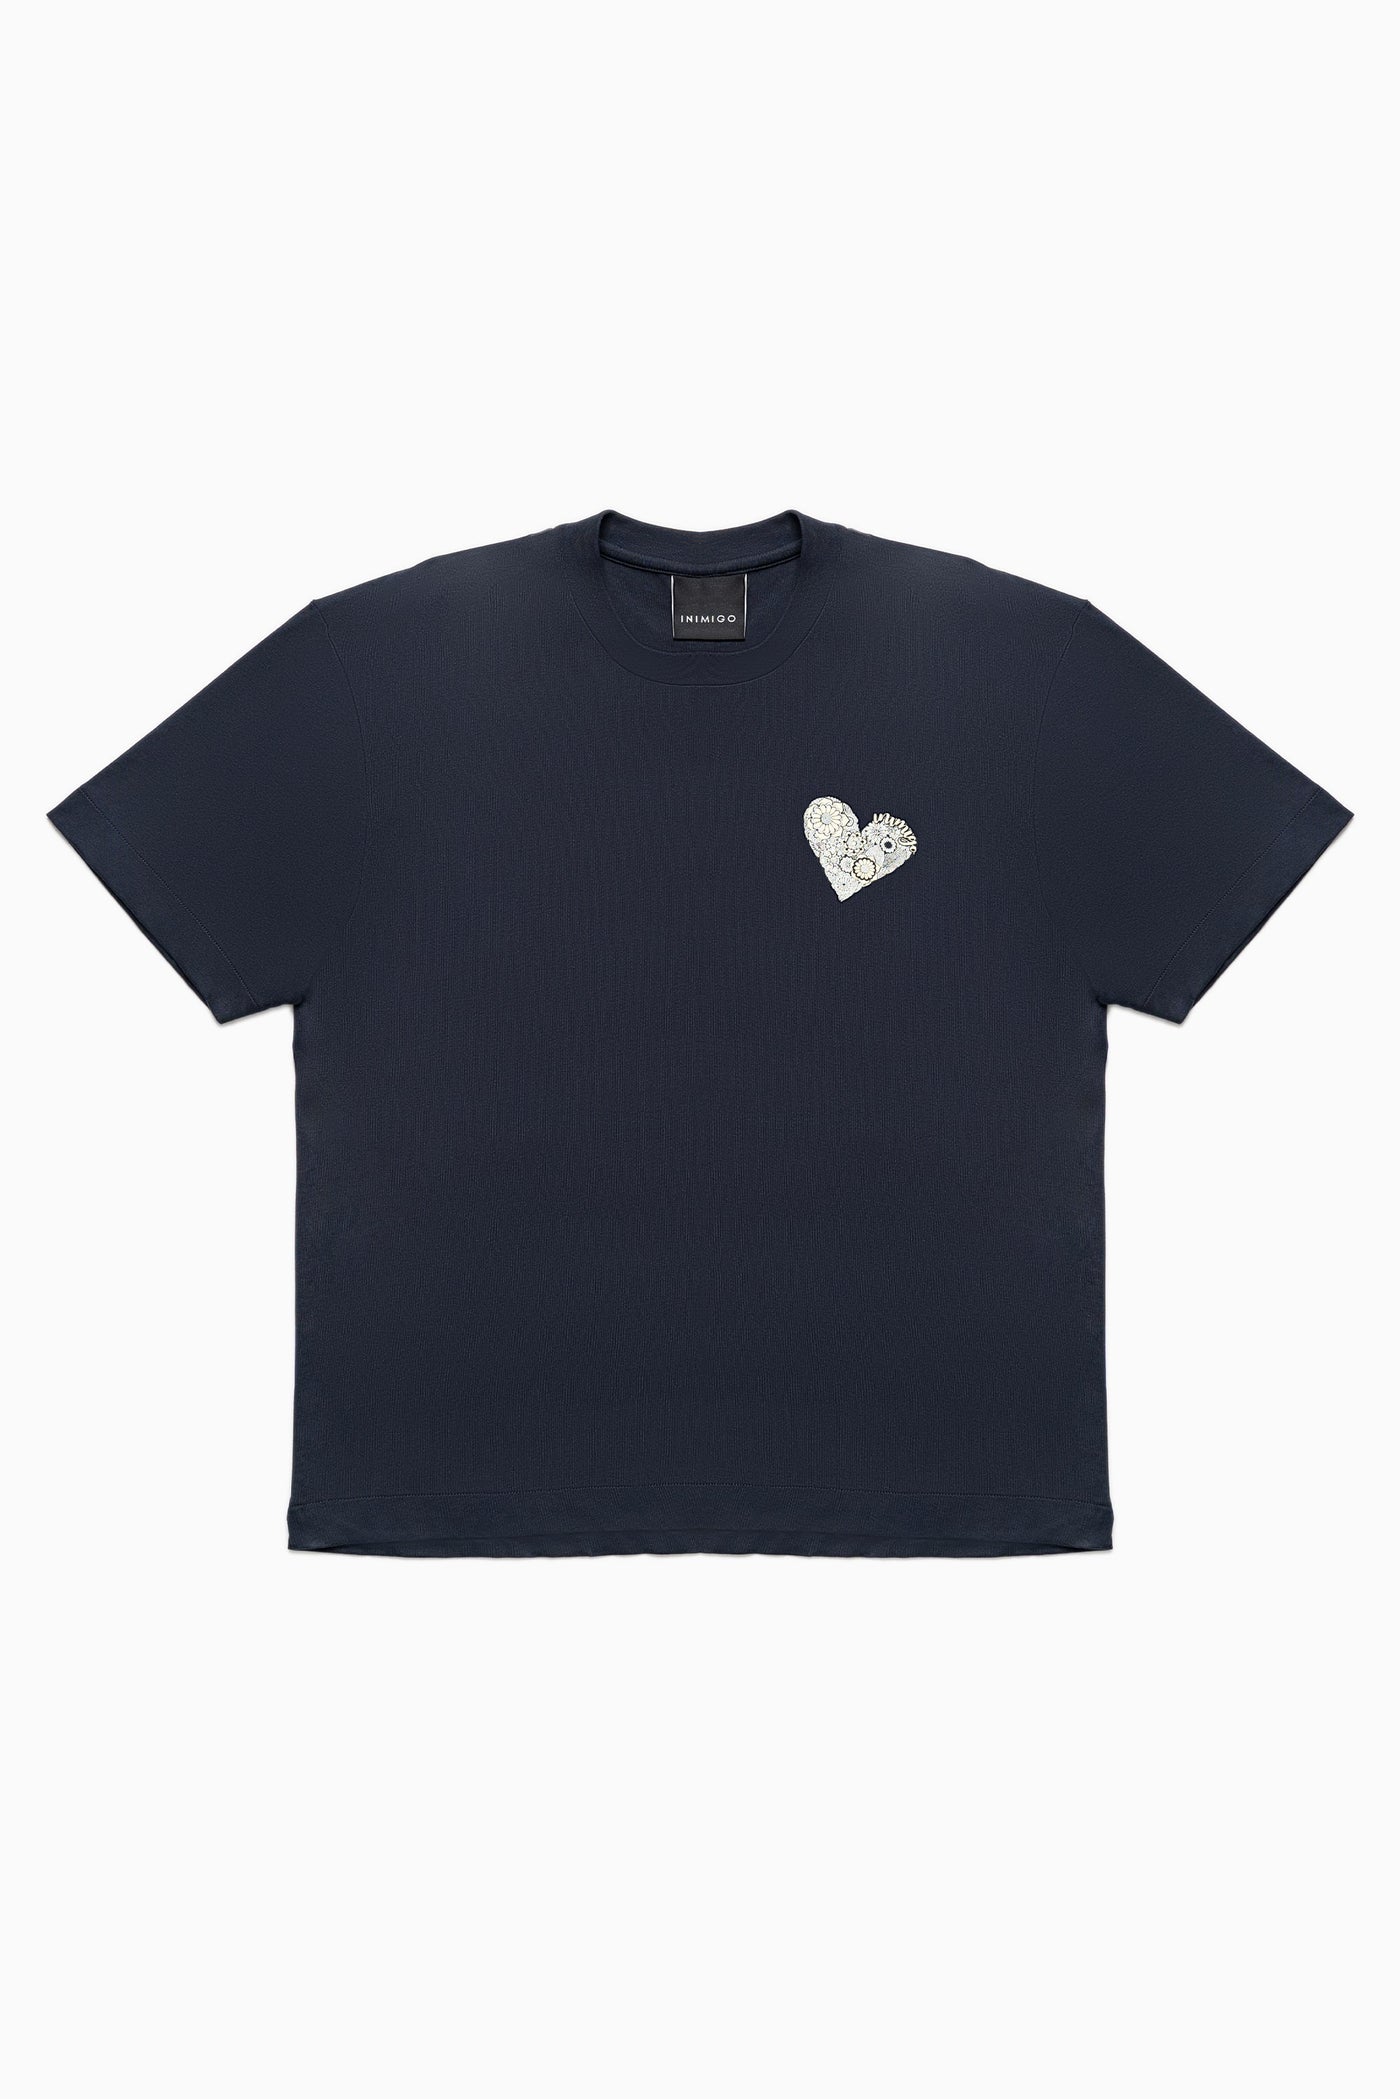 INIMIGO Retro Heart Comfort T-shirt